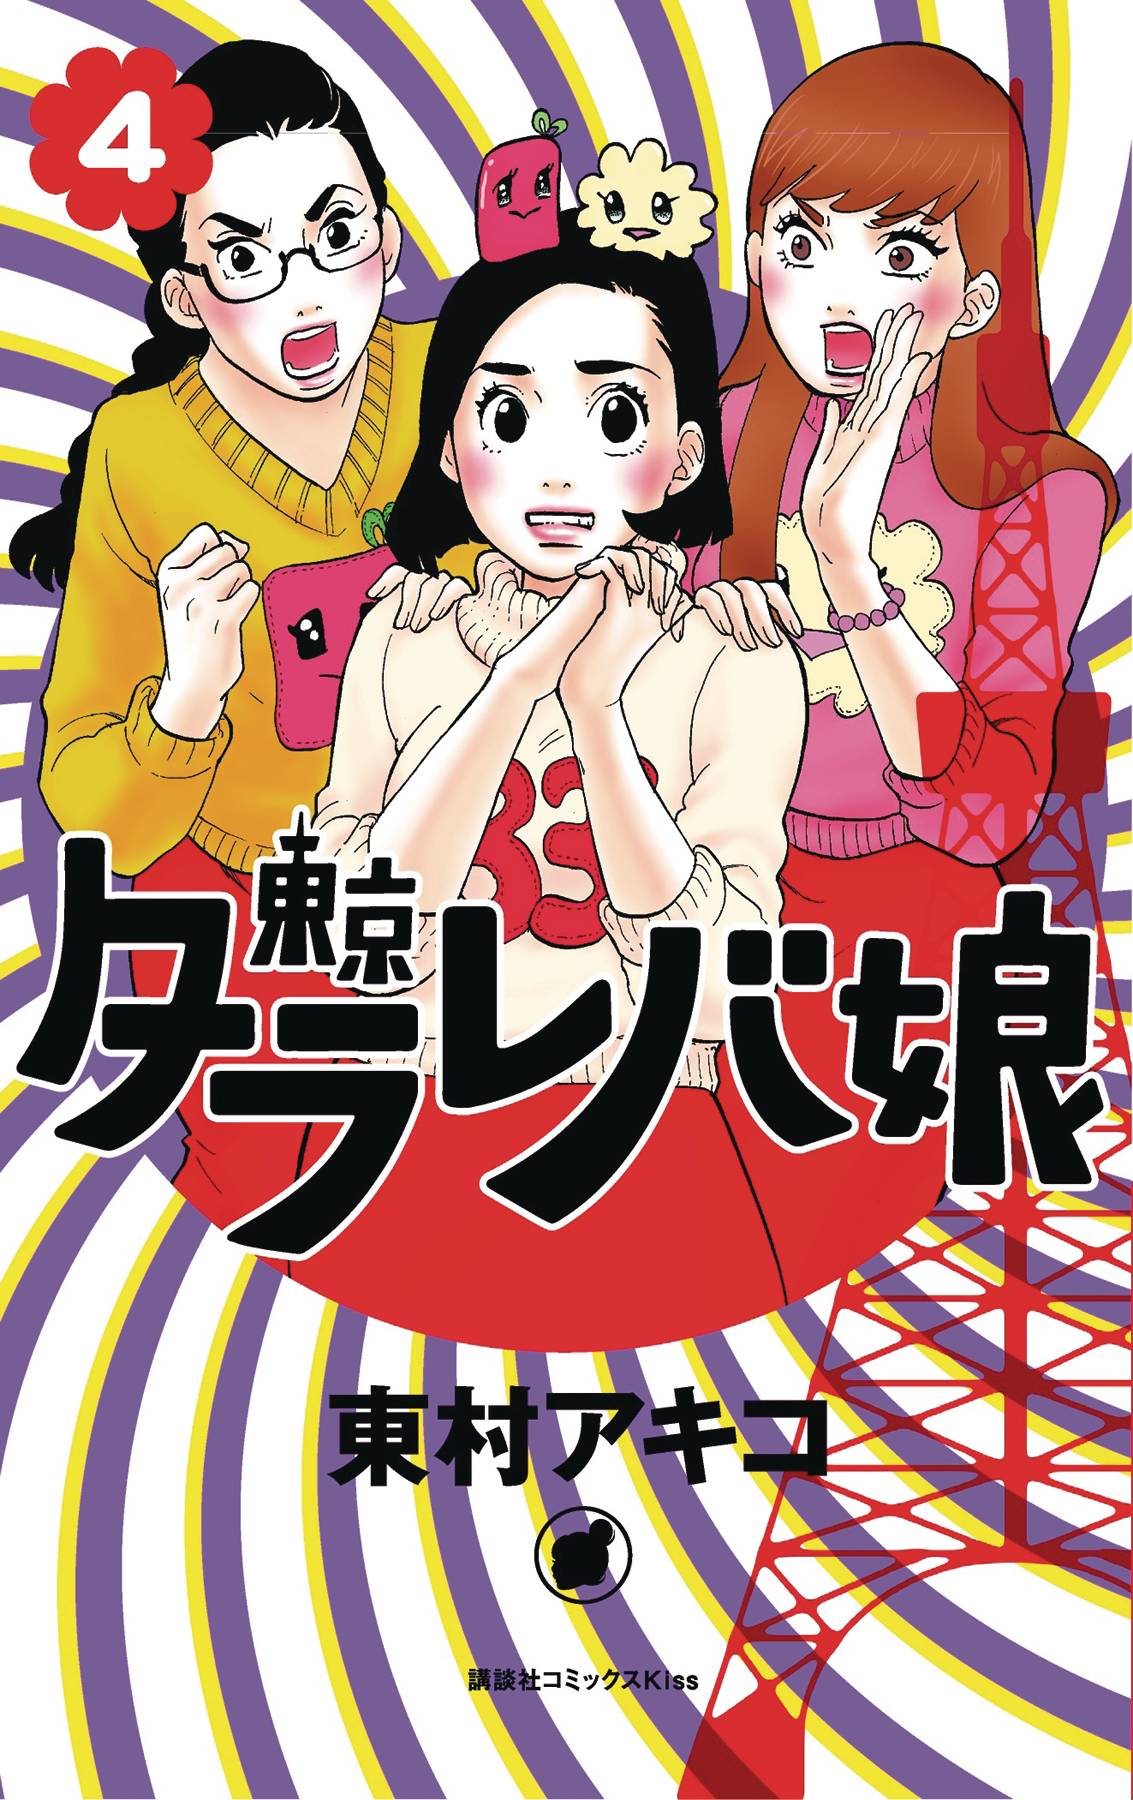 Tokyo Tarareba Girls Manga Volume 4